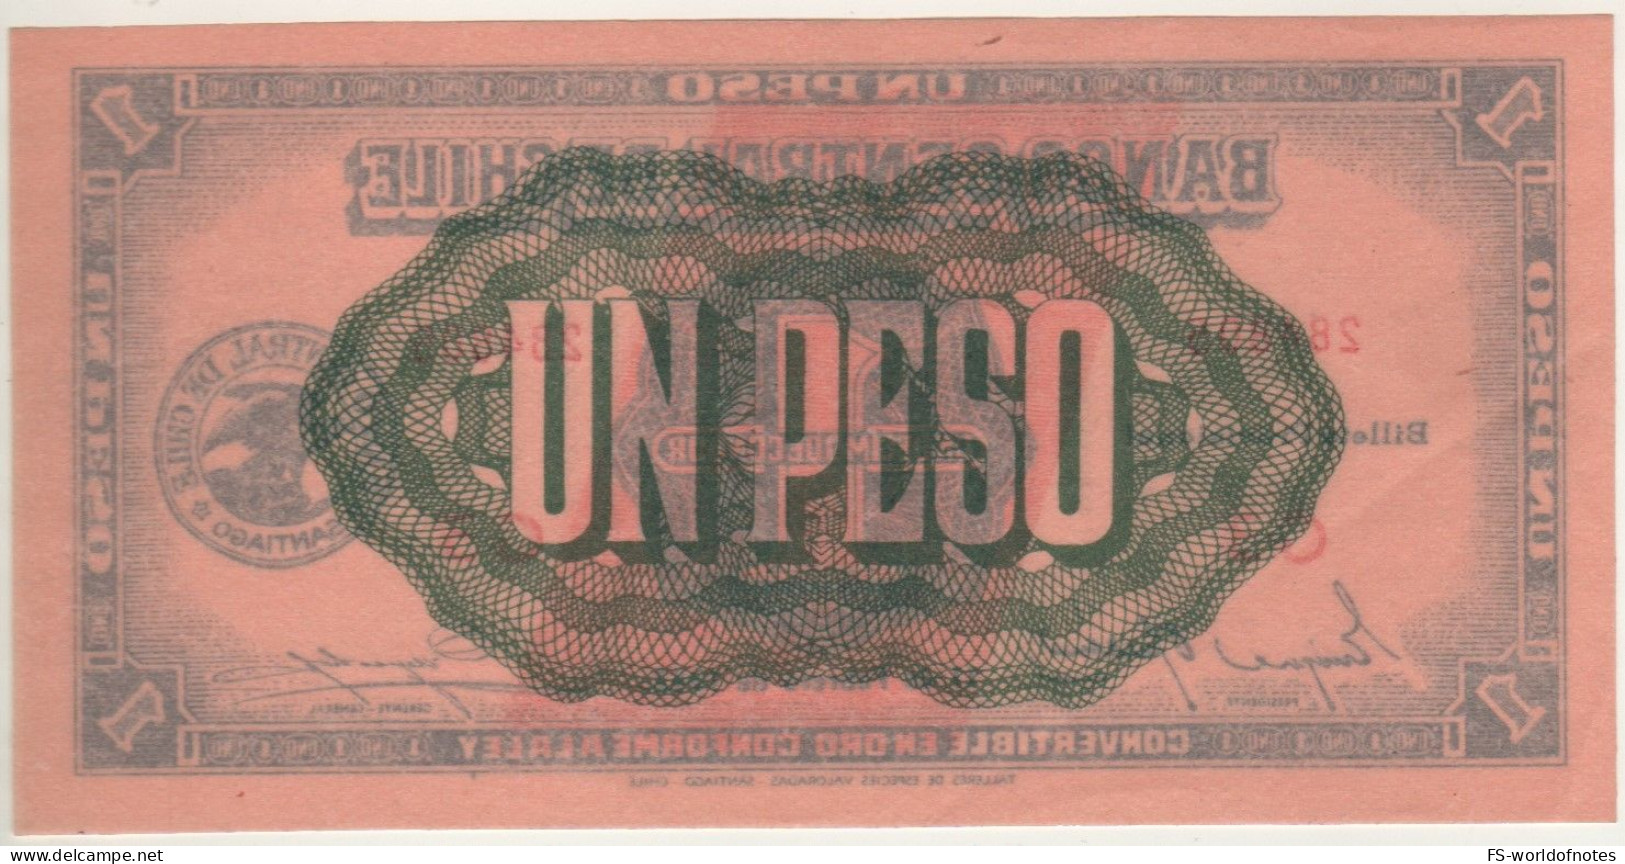 CHILE  1 Peso - (1/10 Condor)  P89   Dated 11.02.1942 - Chili